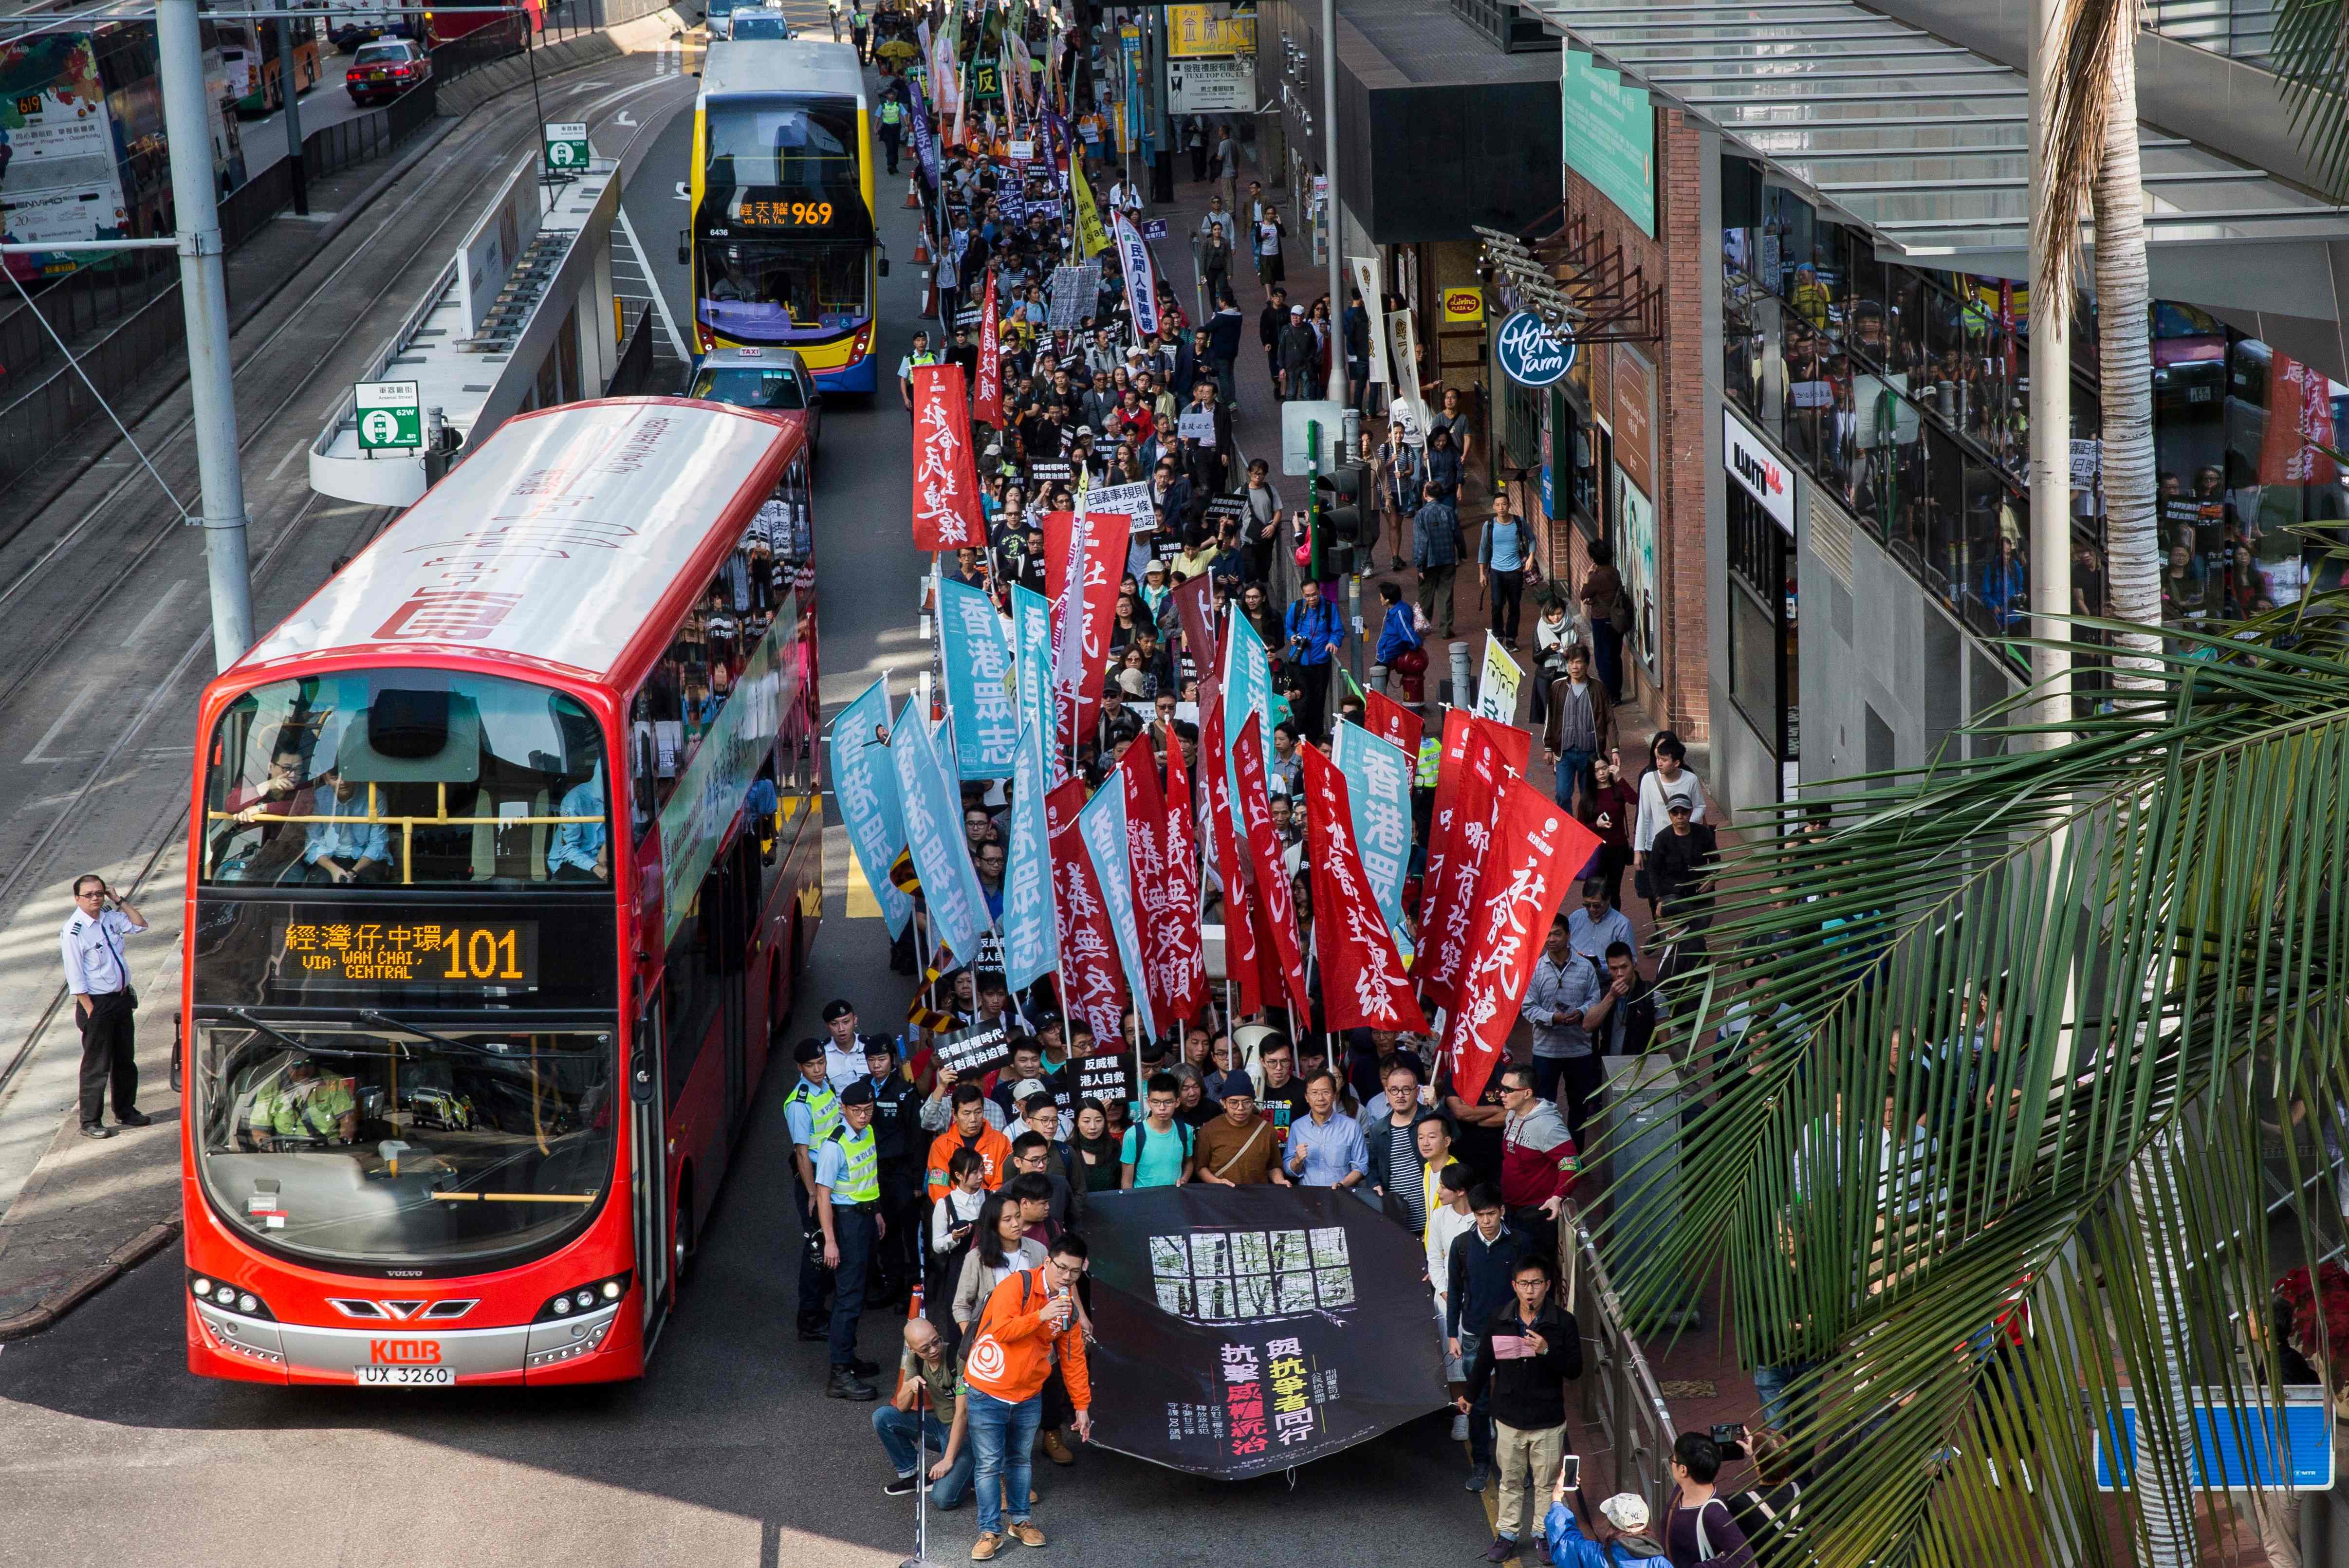 احتجاجات ضد رئيس الصين فى هونج كونج